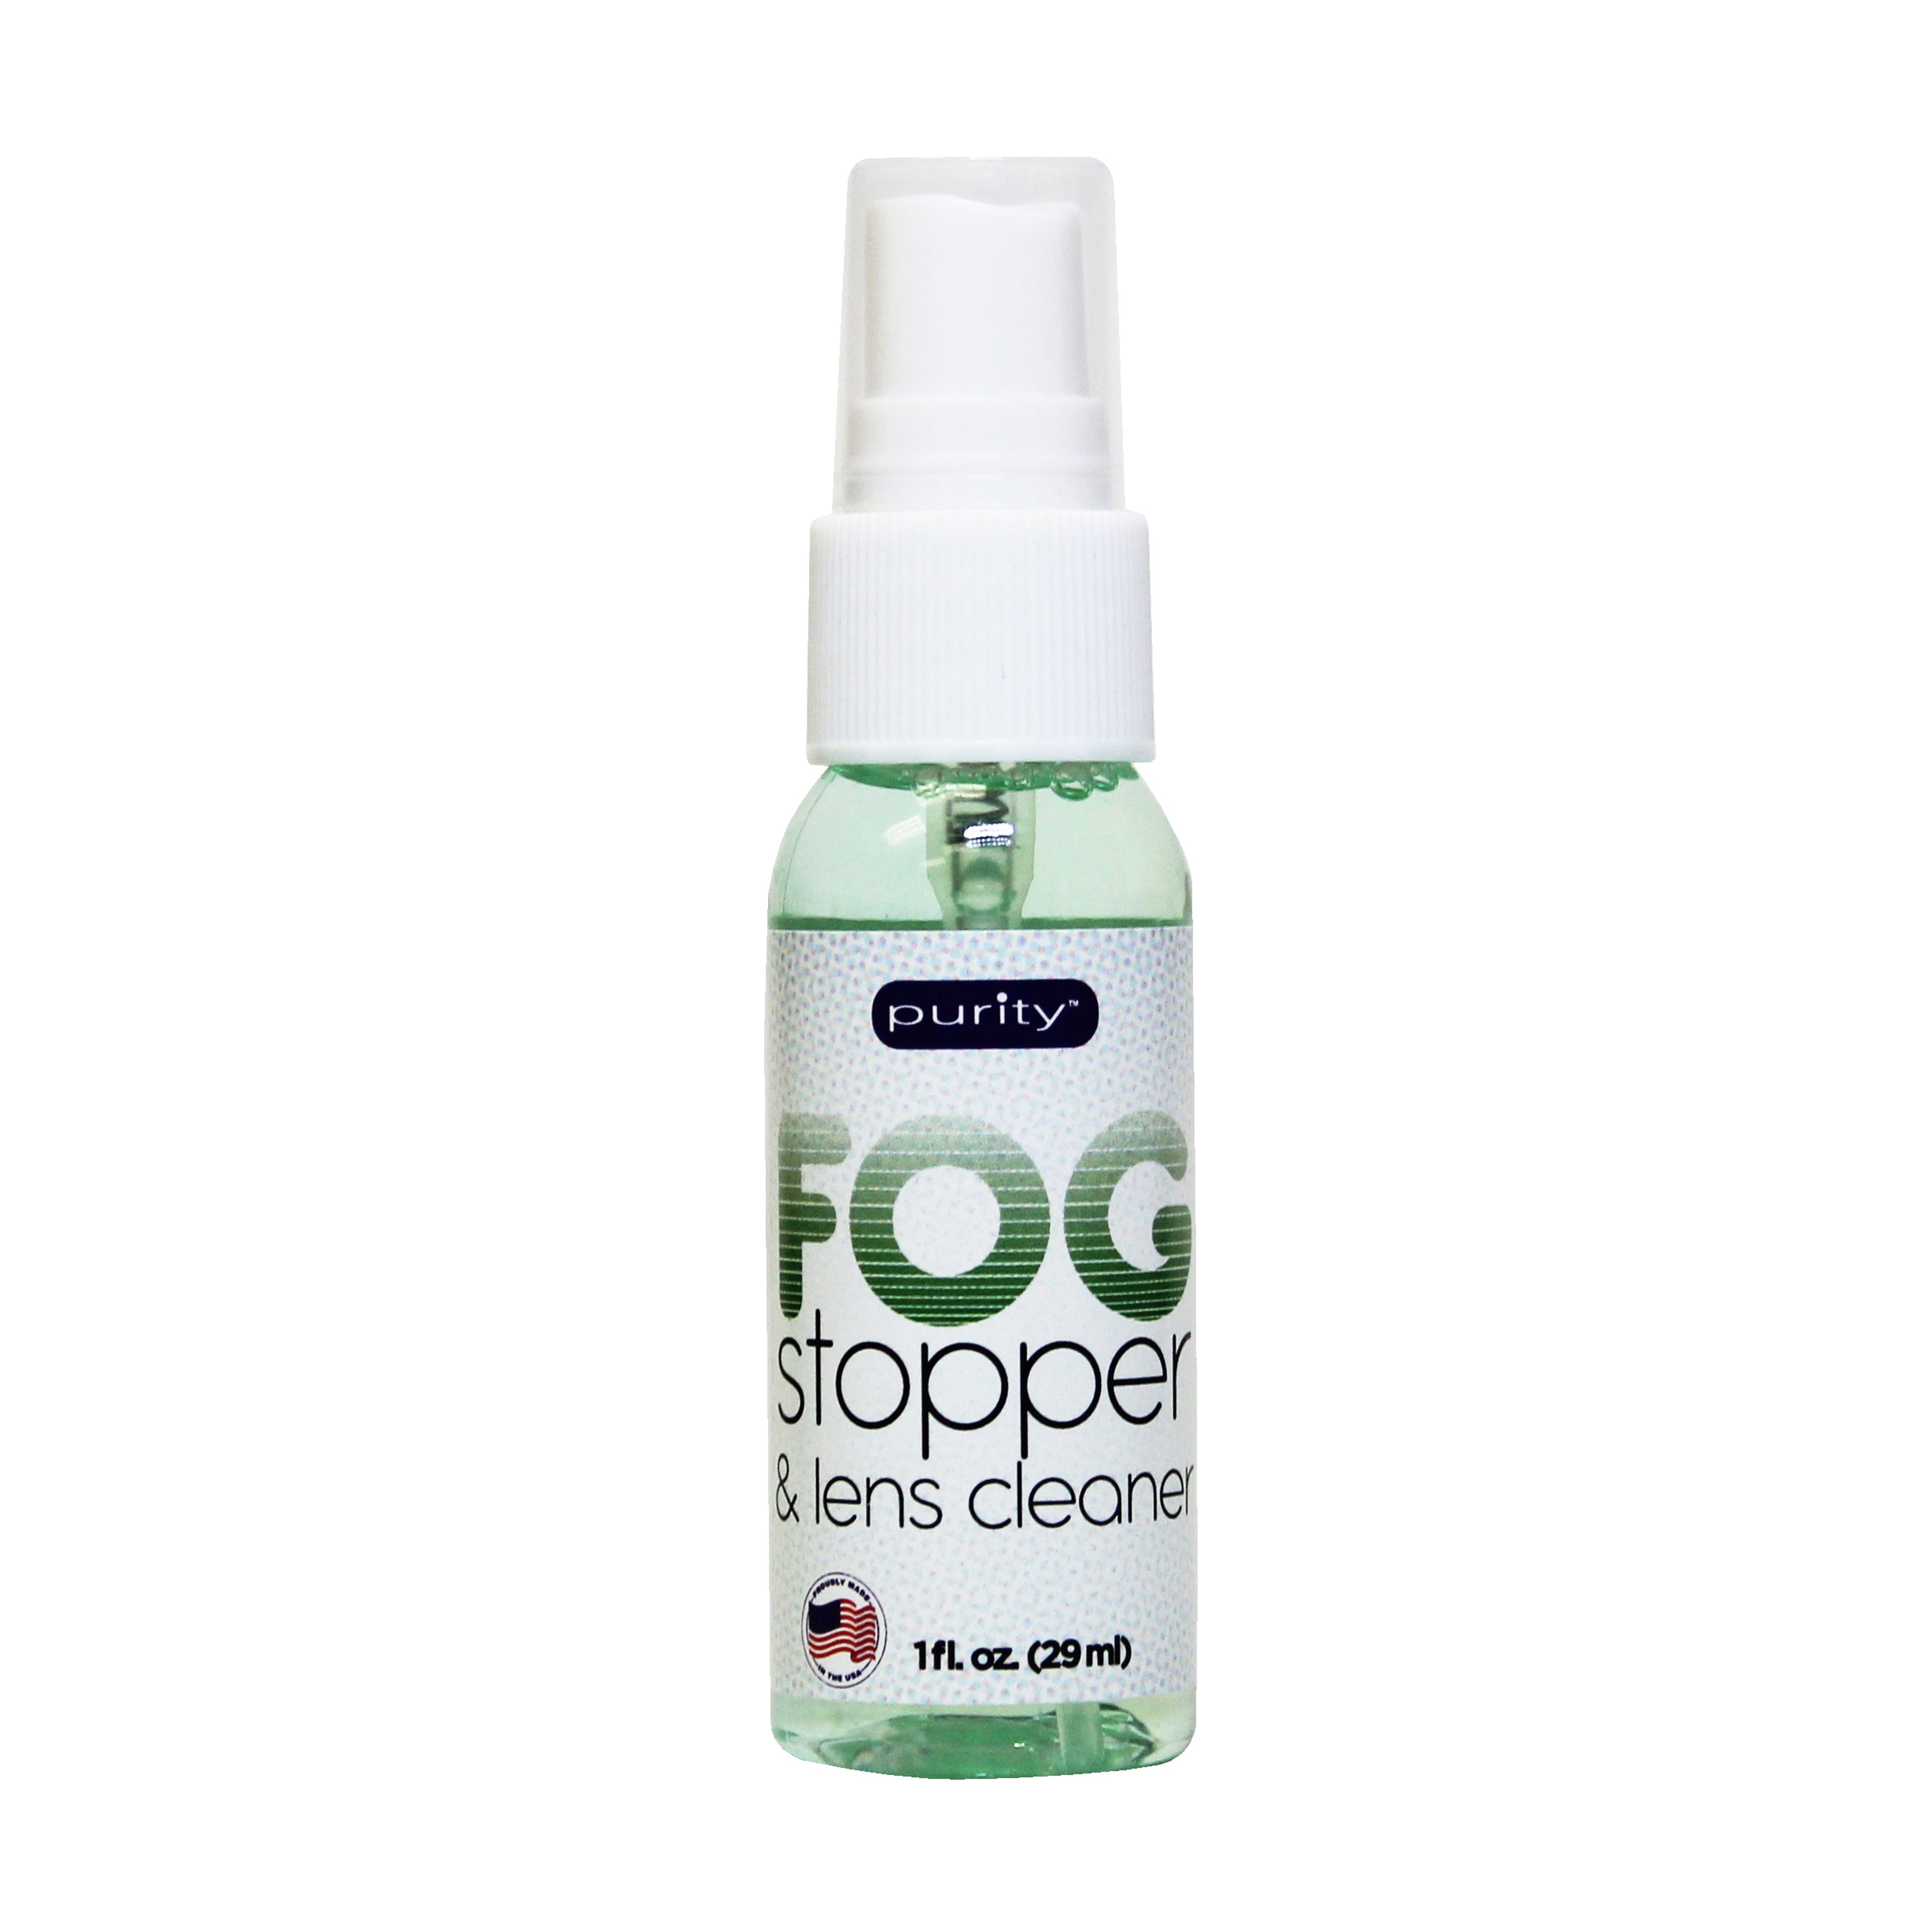 1 oz. Purity Fog Stopper™ & Lens Cleaner